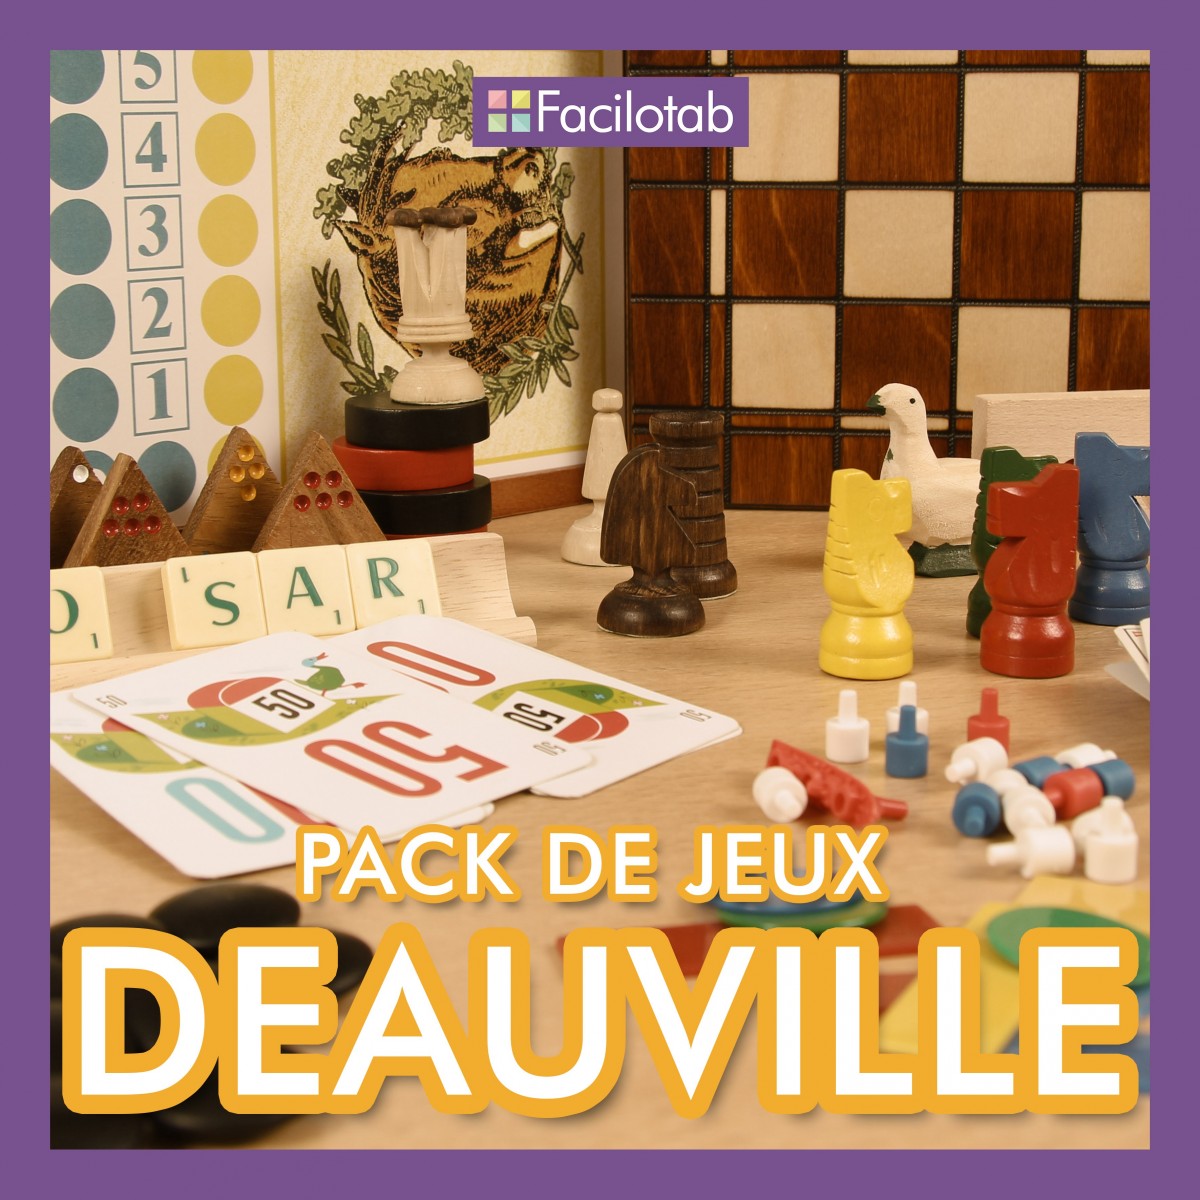 Pack de jeux "Deauville"